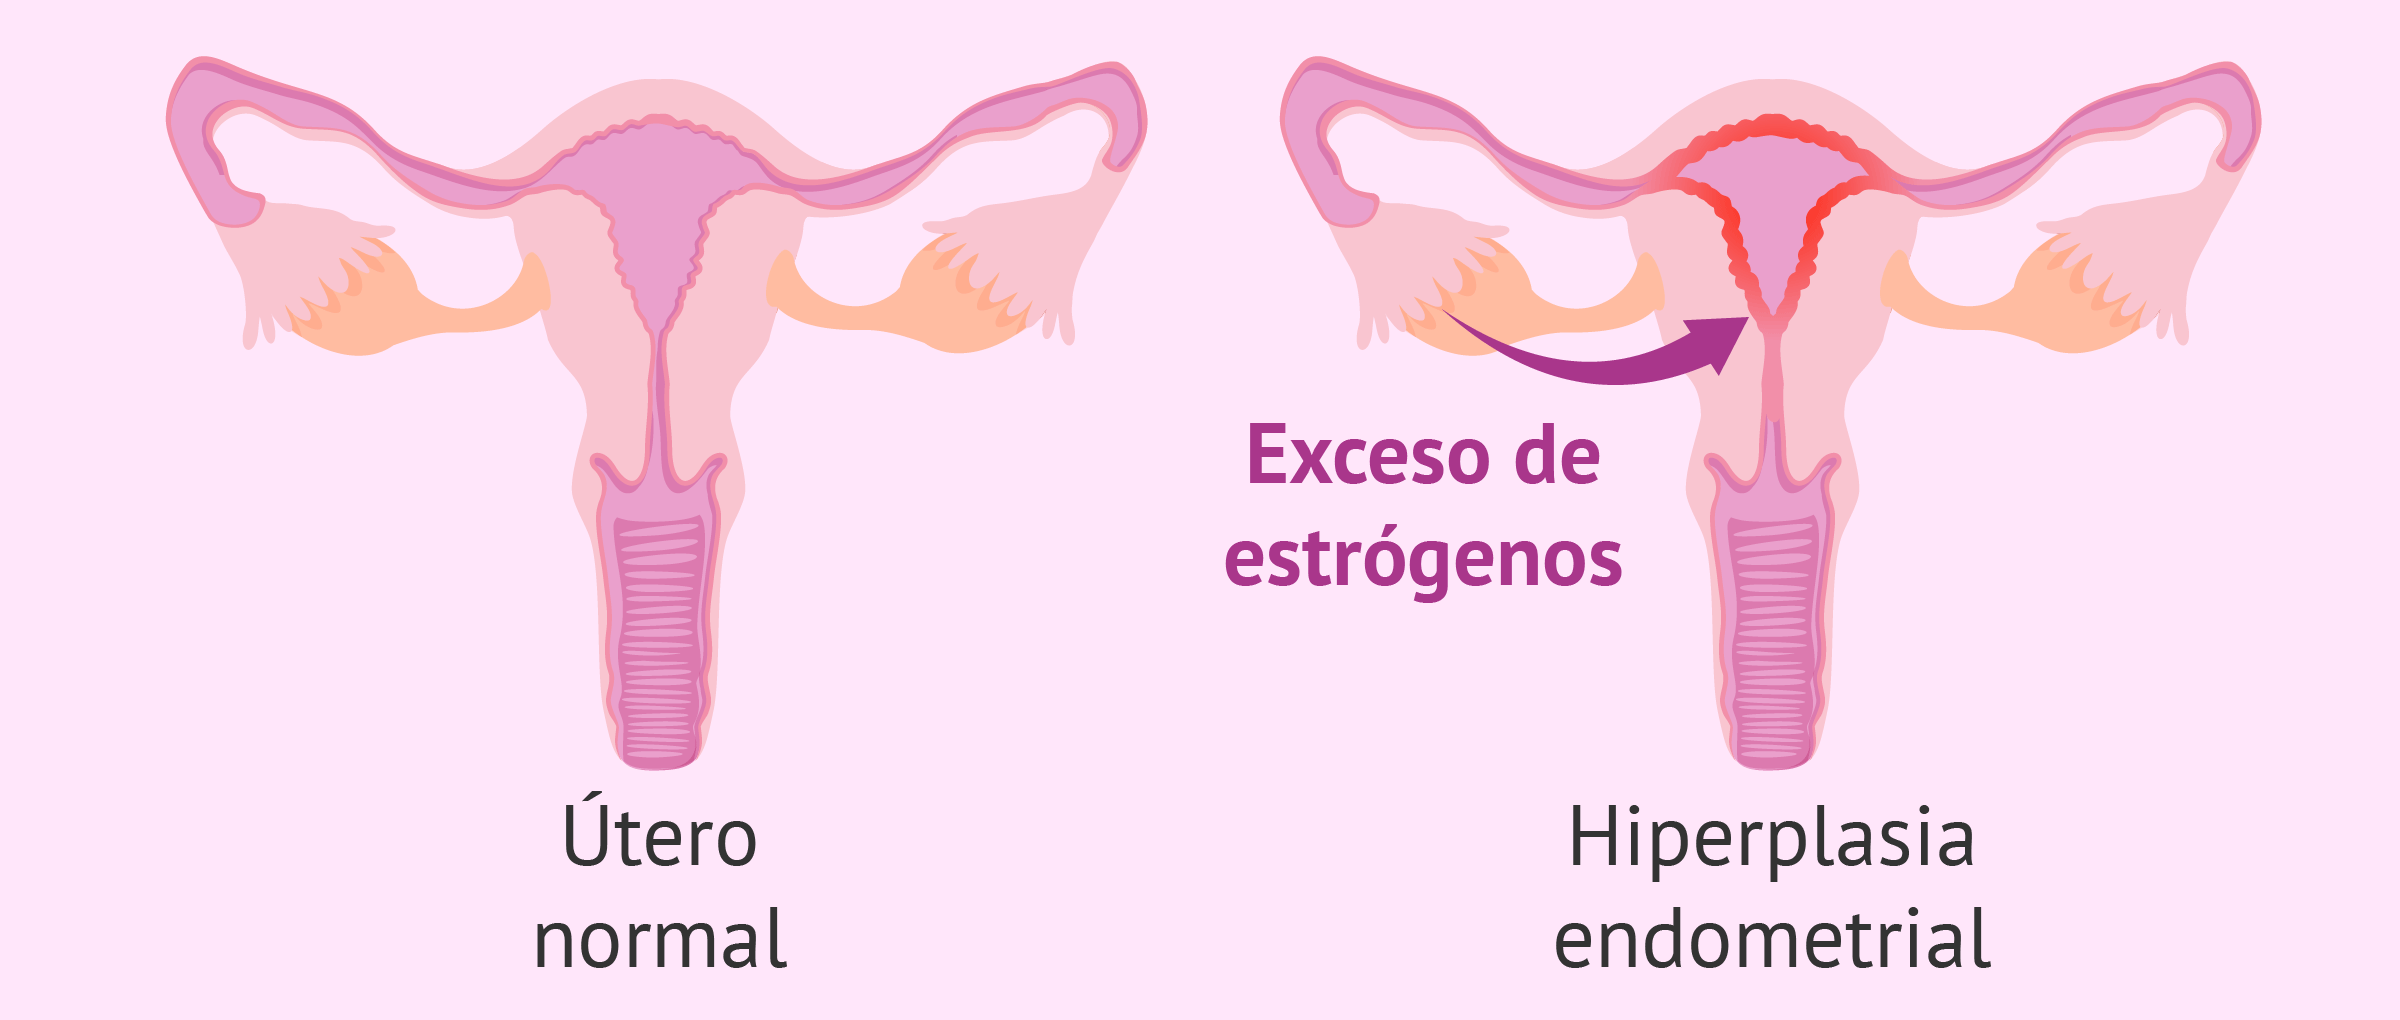 La hiperplasia endometrial